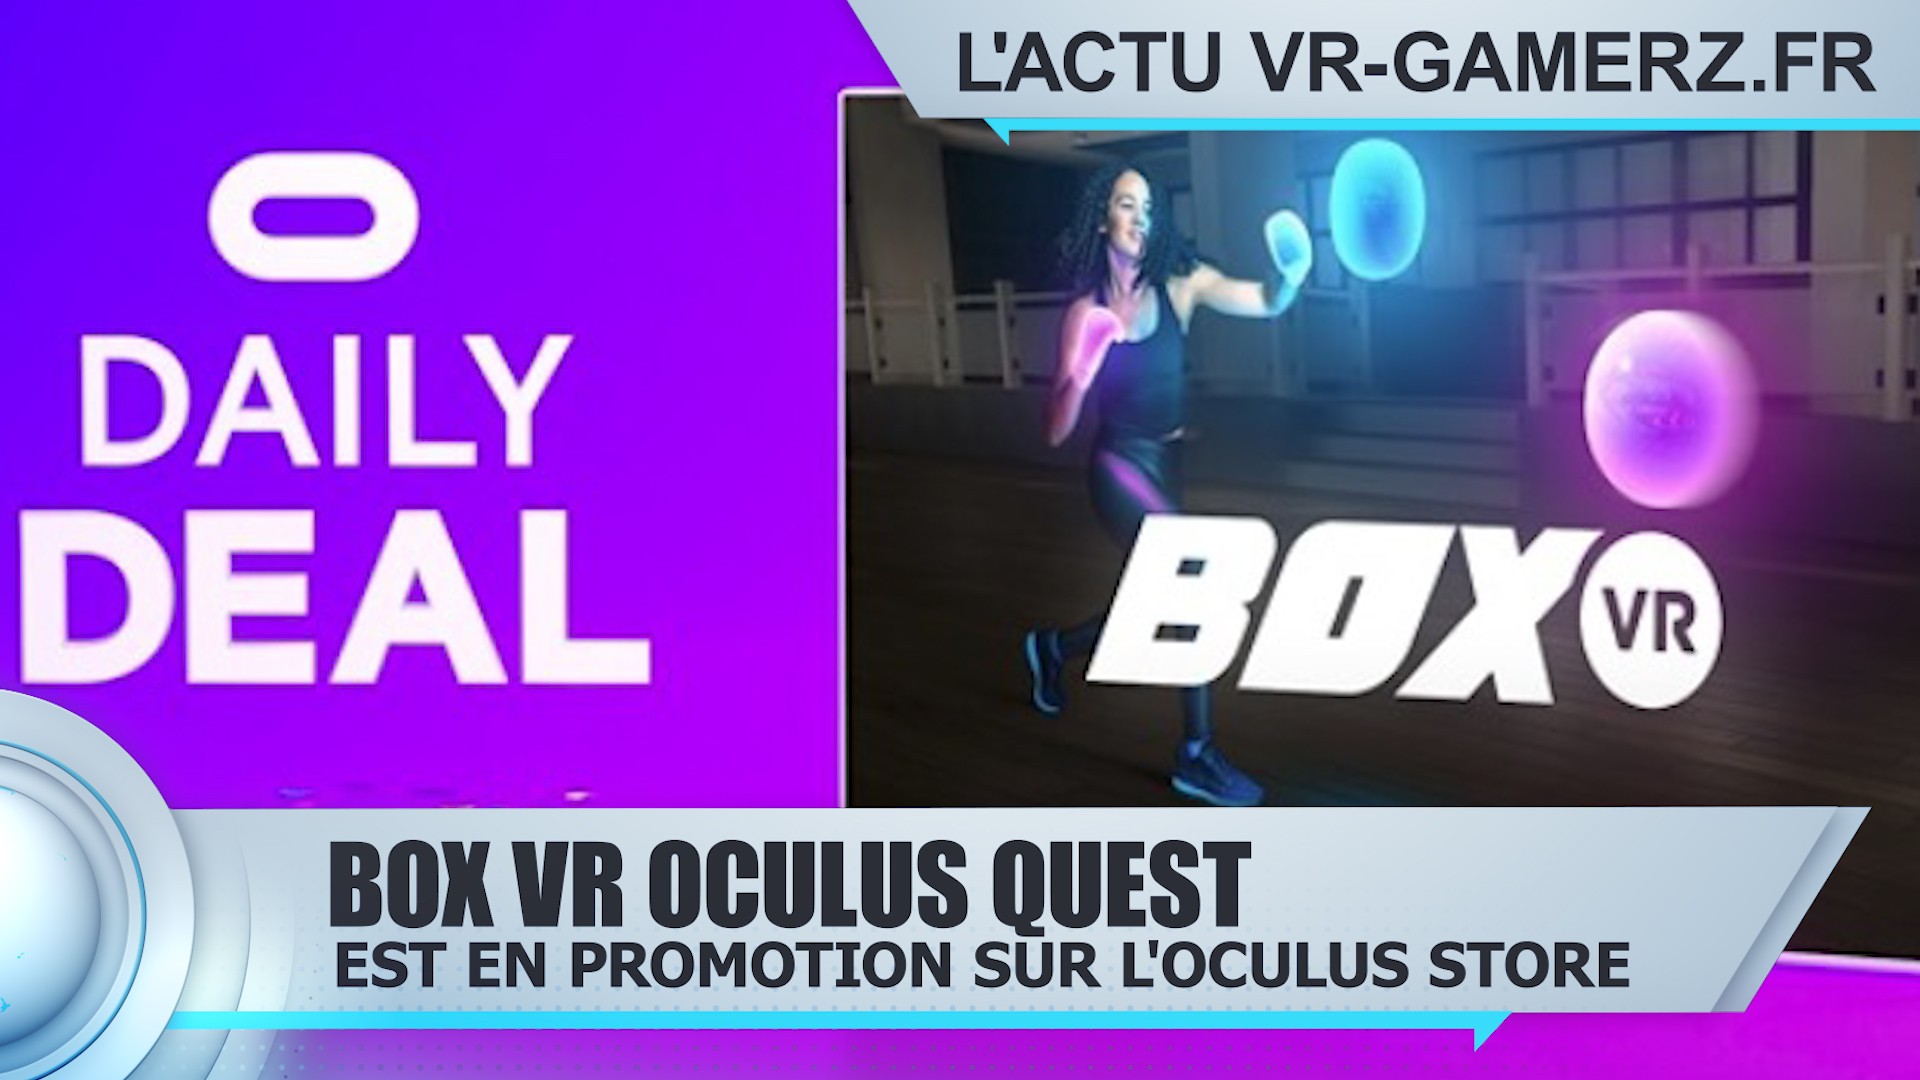 Box VR Oculus quest est en promotion